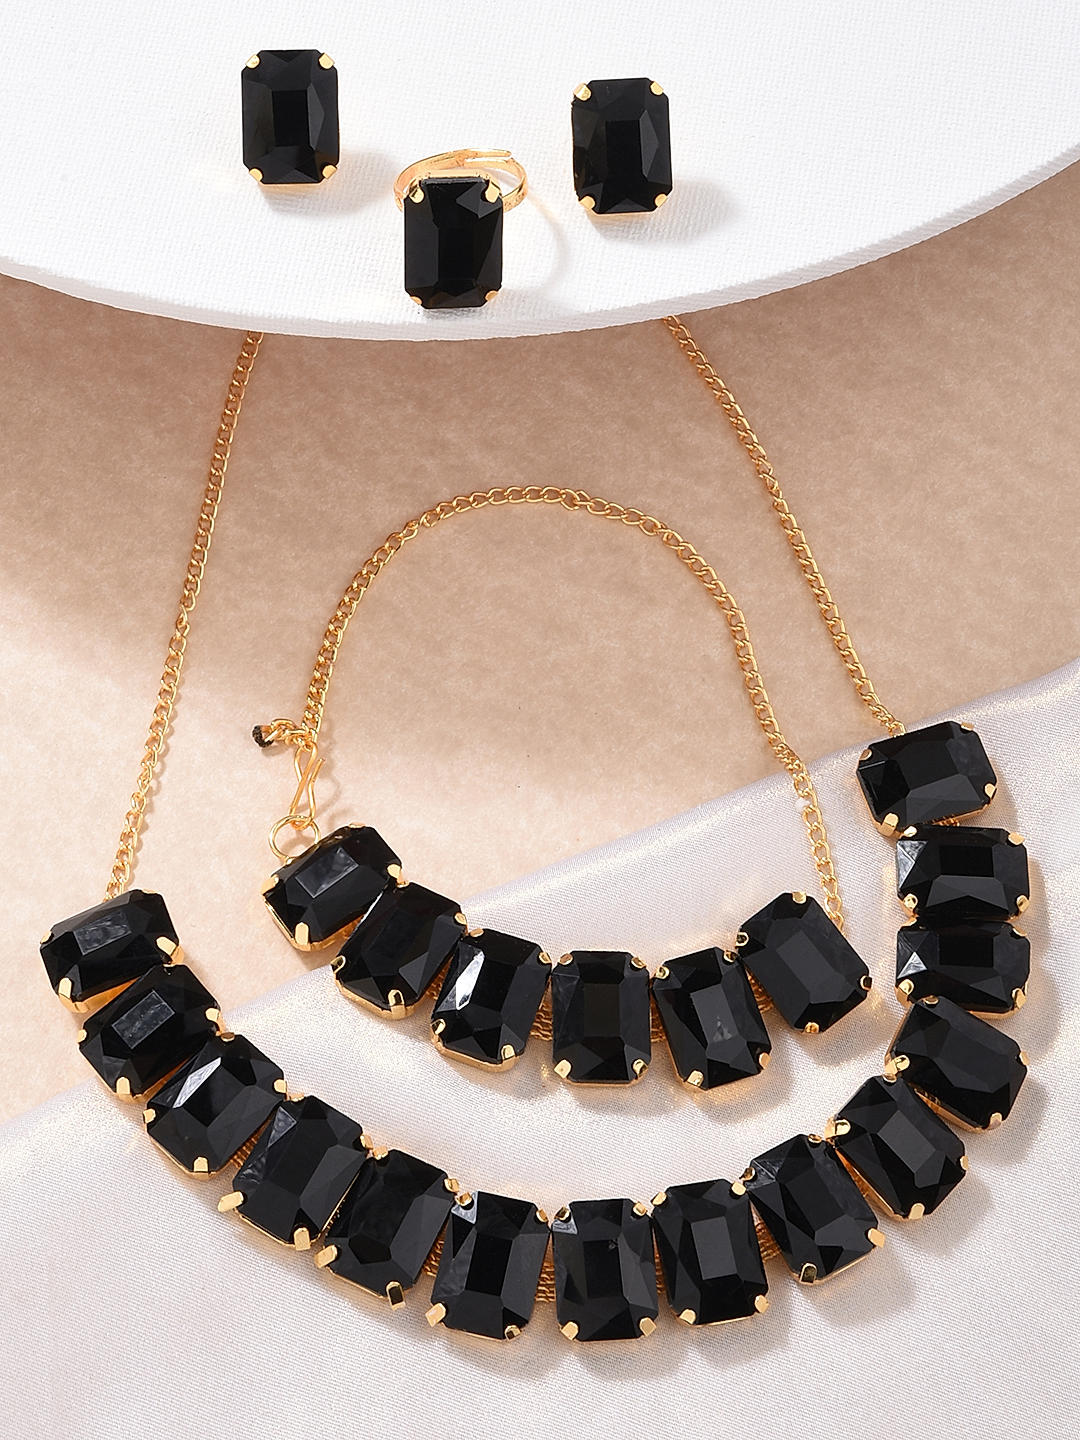 Black Pear Shaped Necklace | Swarovski Crystal Prom Jewelry |